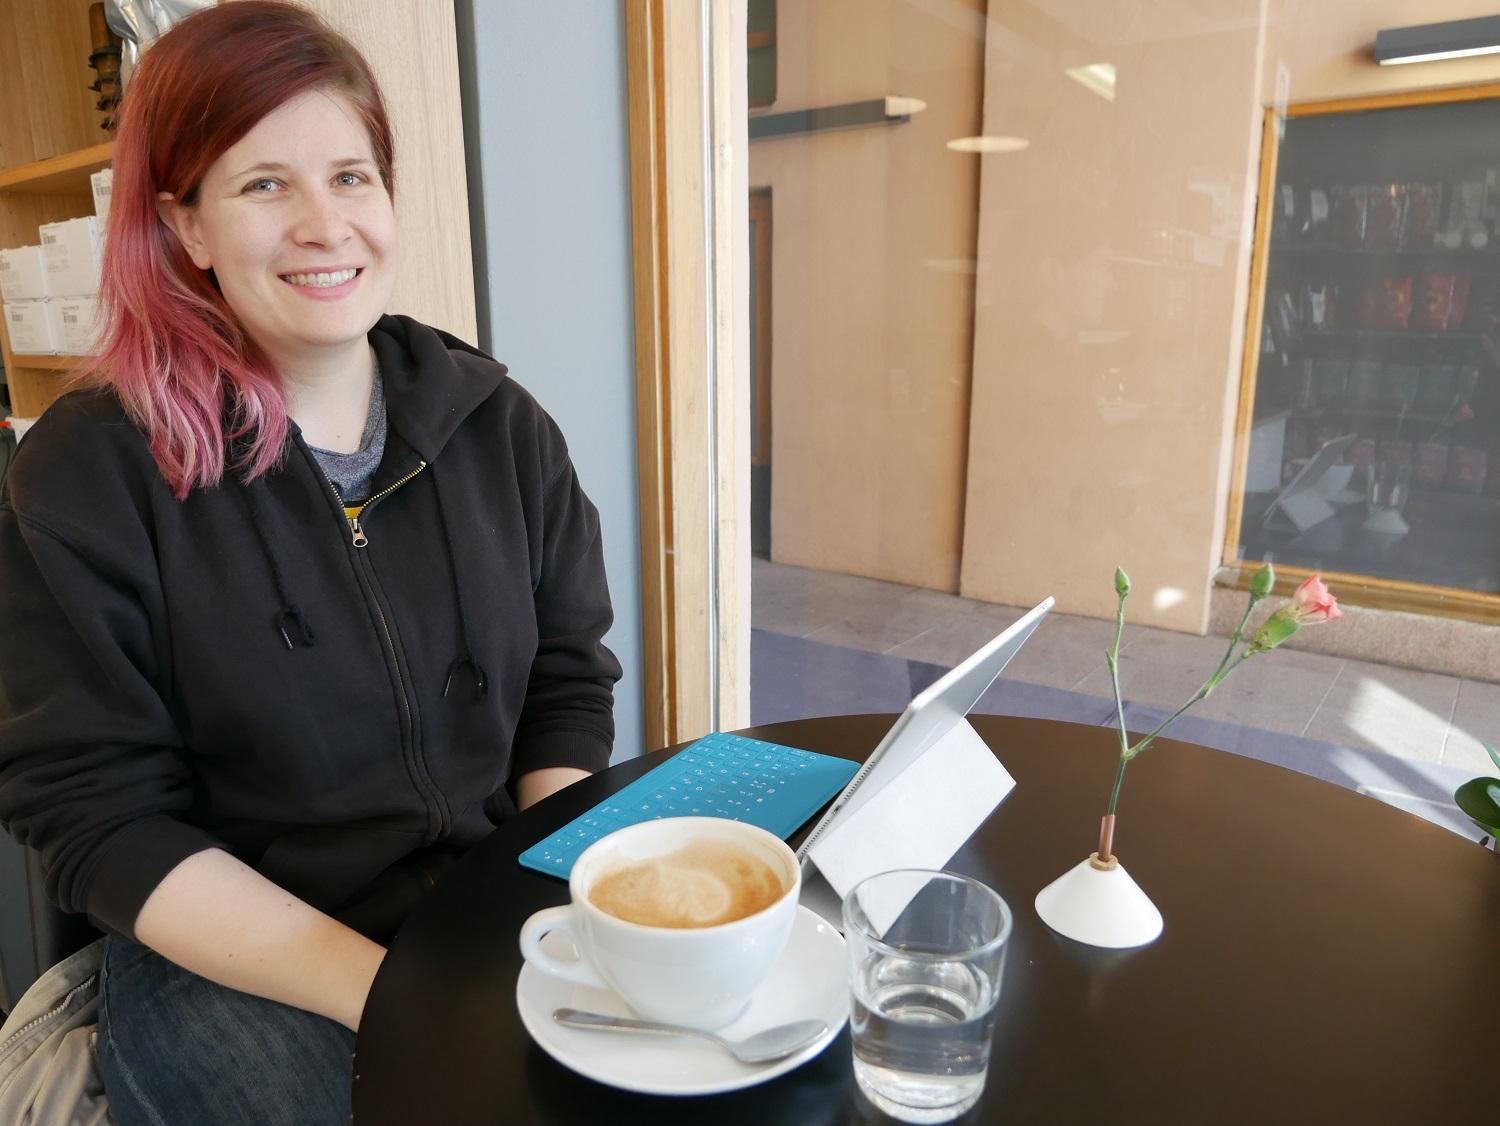 Taru Heikkonen från Lundo passar på att äta frukost ute då hon hinner innan arbetet i Åbo centrum.